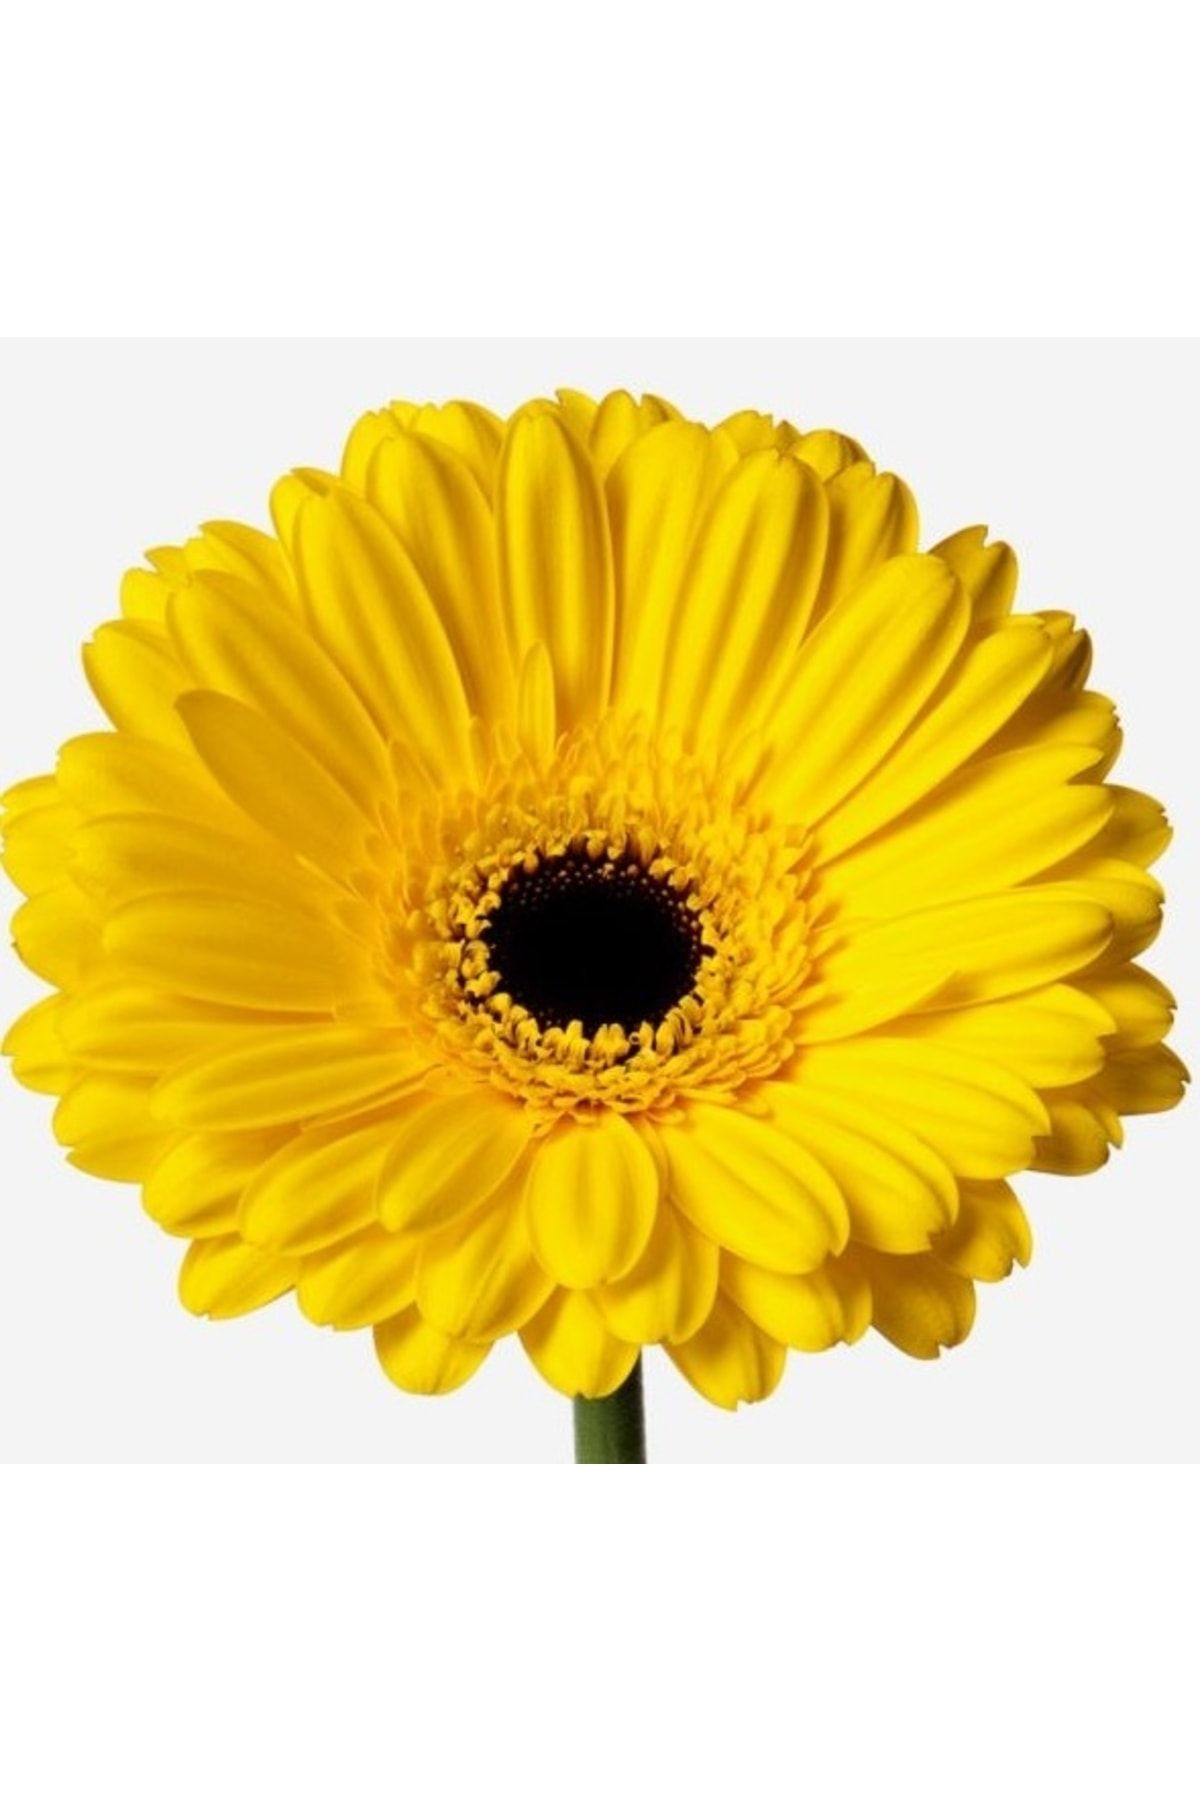 logitel 100 Adet Karışık Renk Gerbera Çiçeği Tohum+10 Adet Hediye Karışık Renk Lale Çiçek Tohum